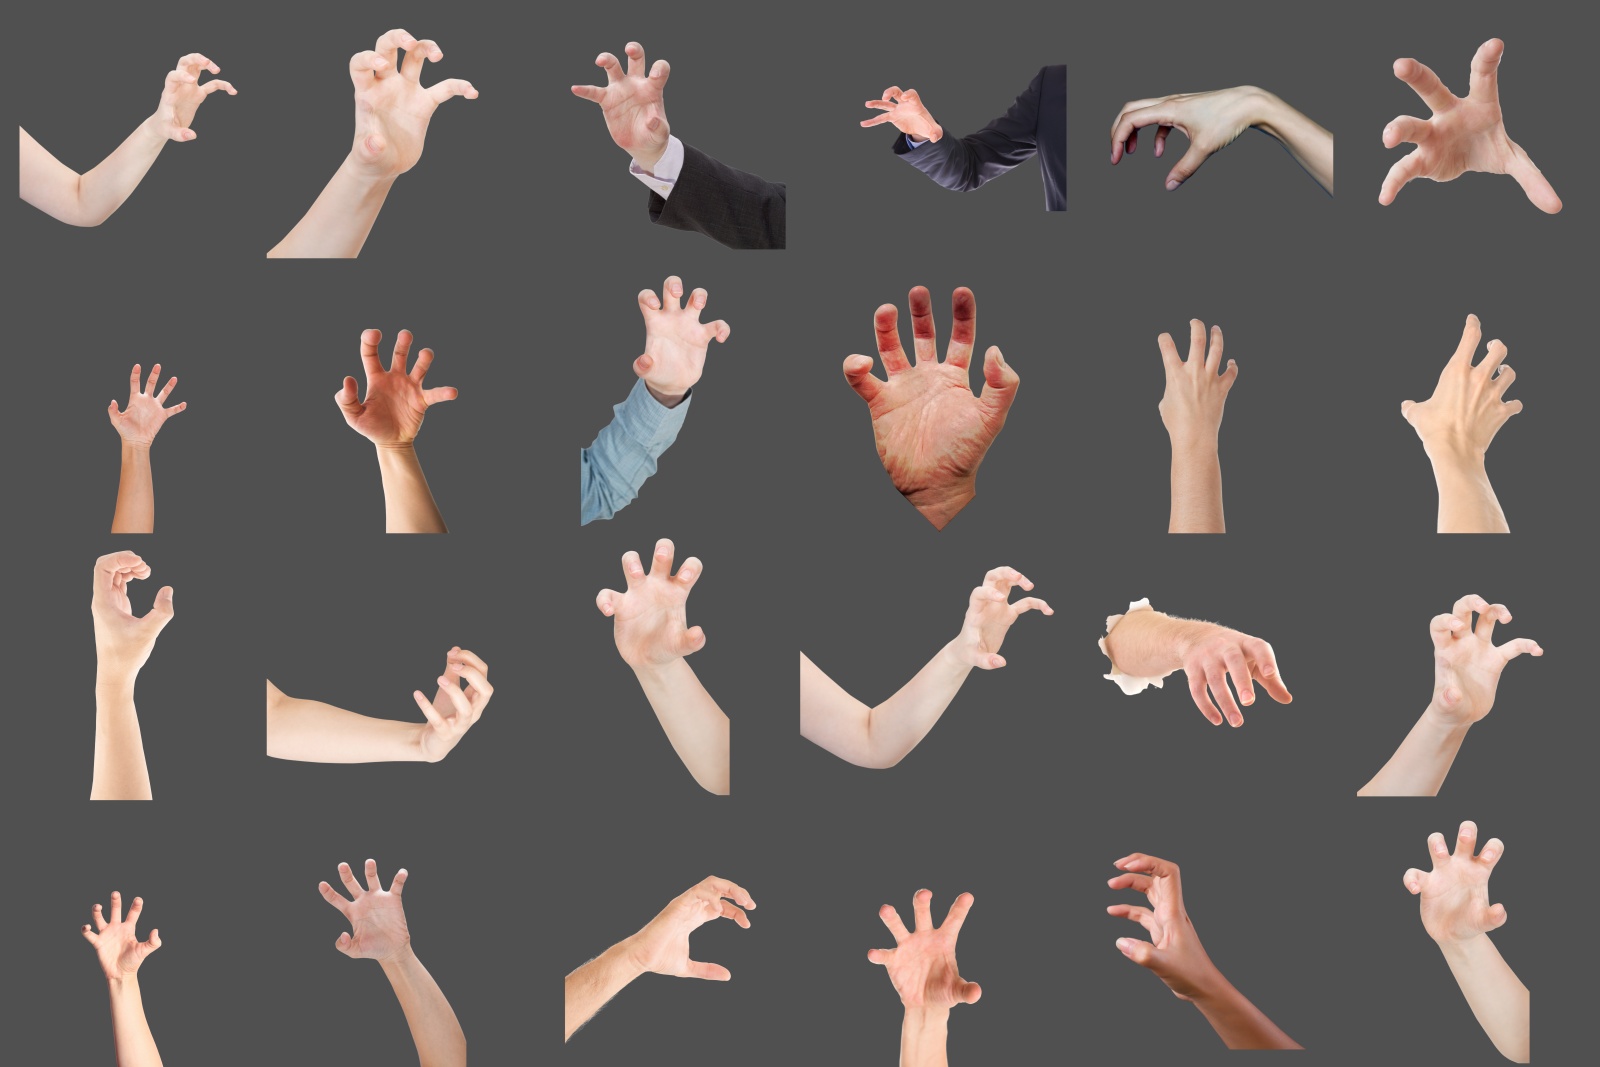 resize_dark_clawing hand gesture2-tile.jpg